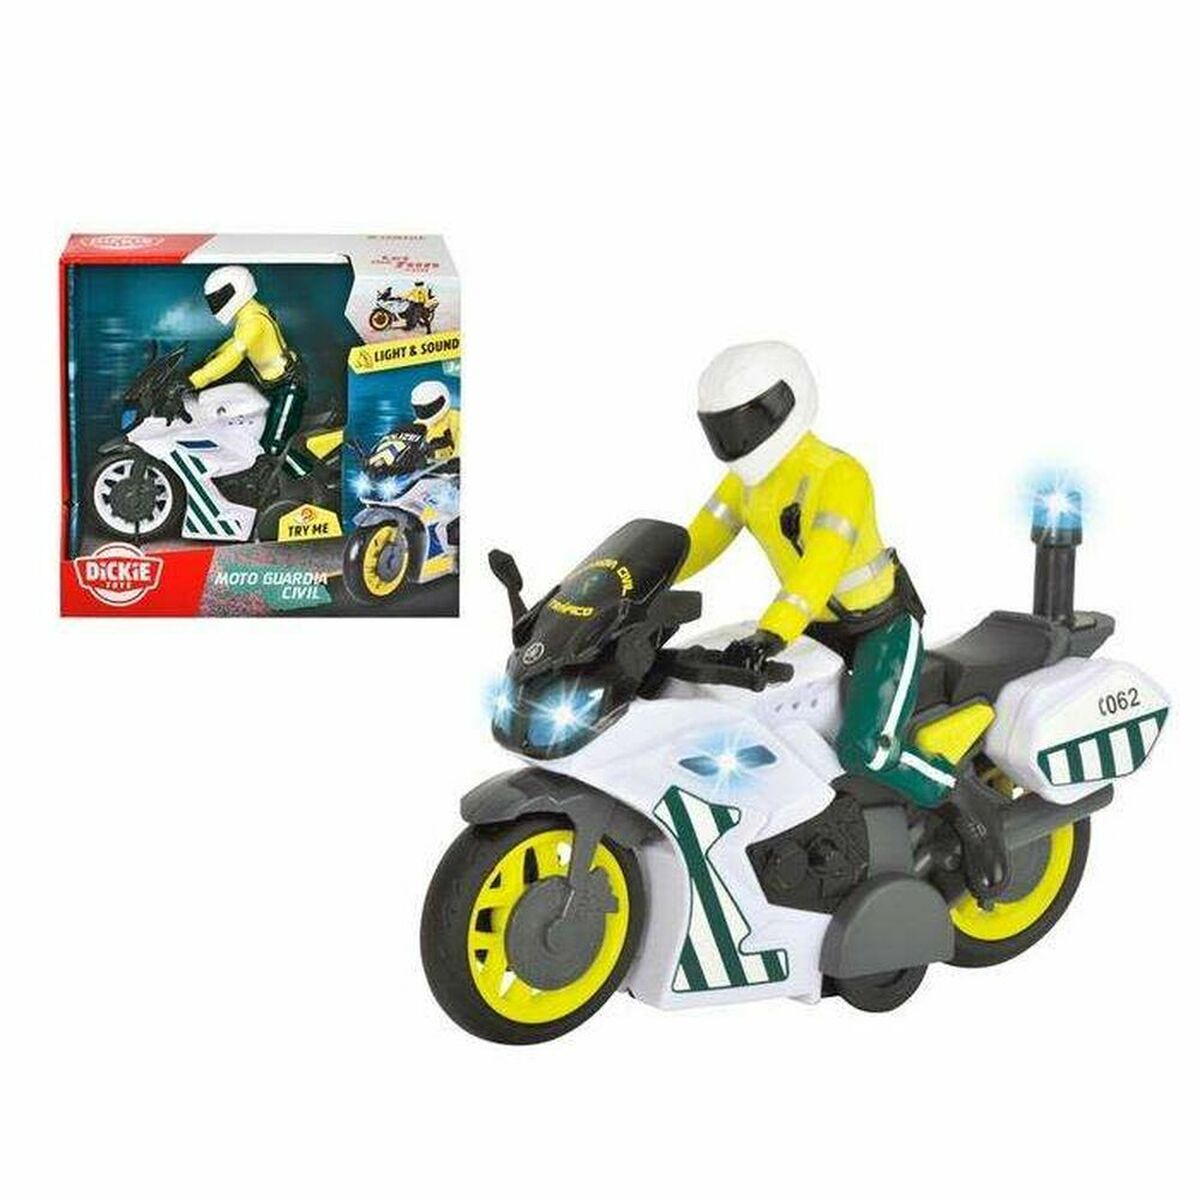 Motocyclette Dickie Toys    17 cm Police